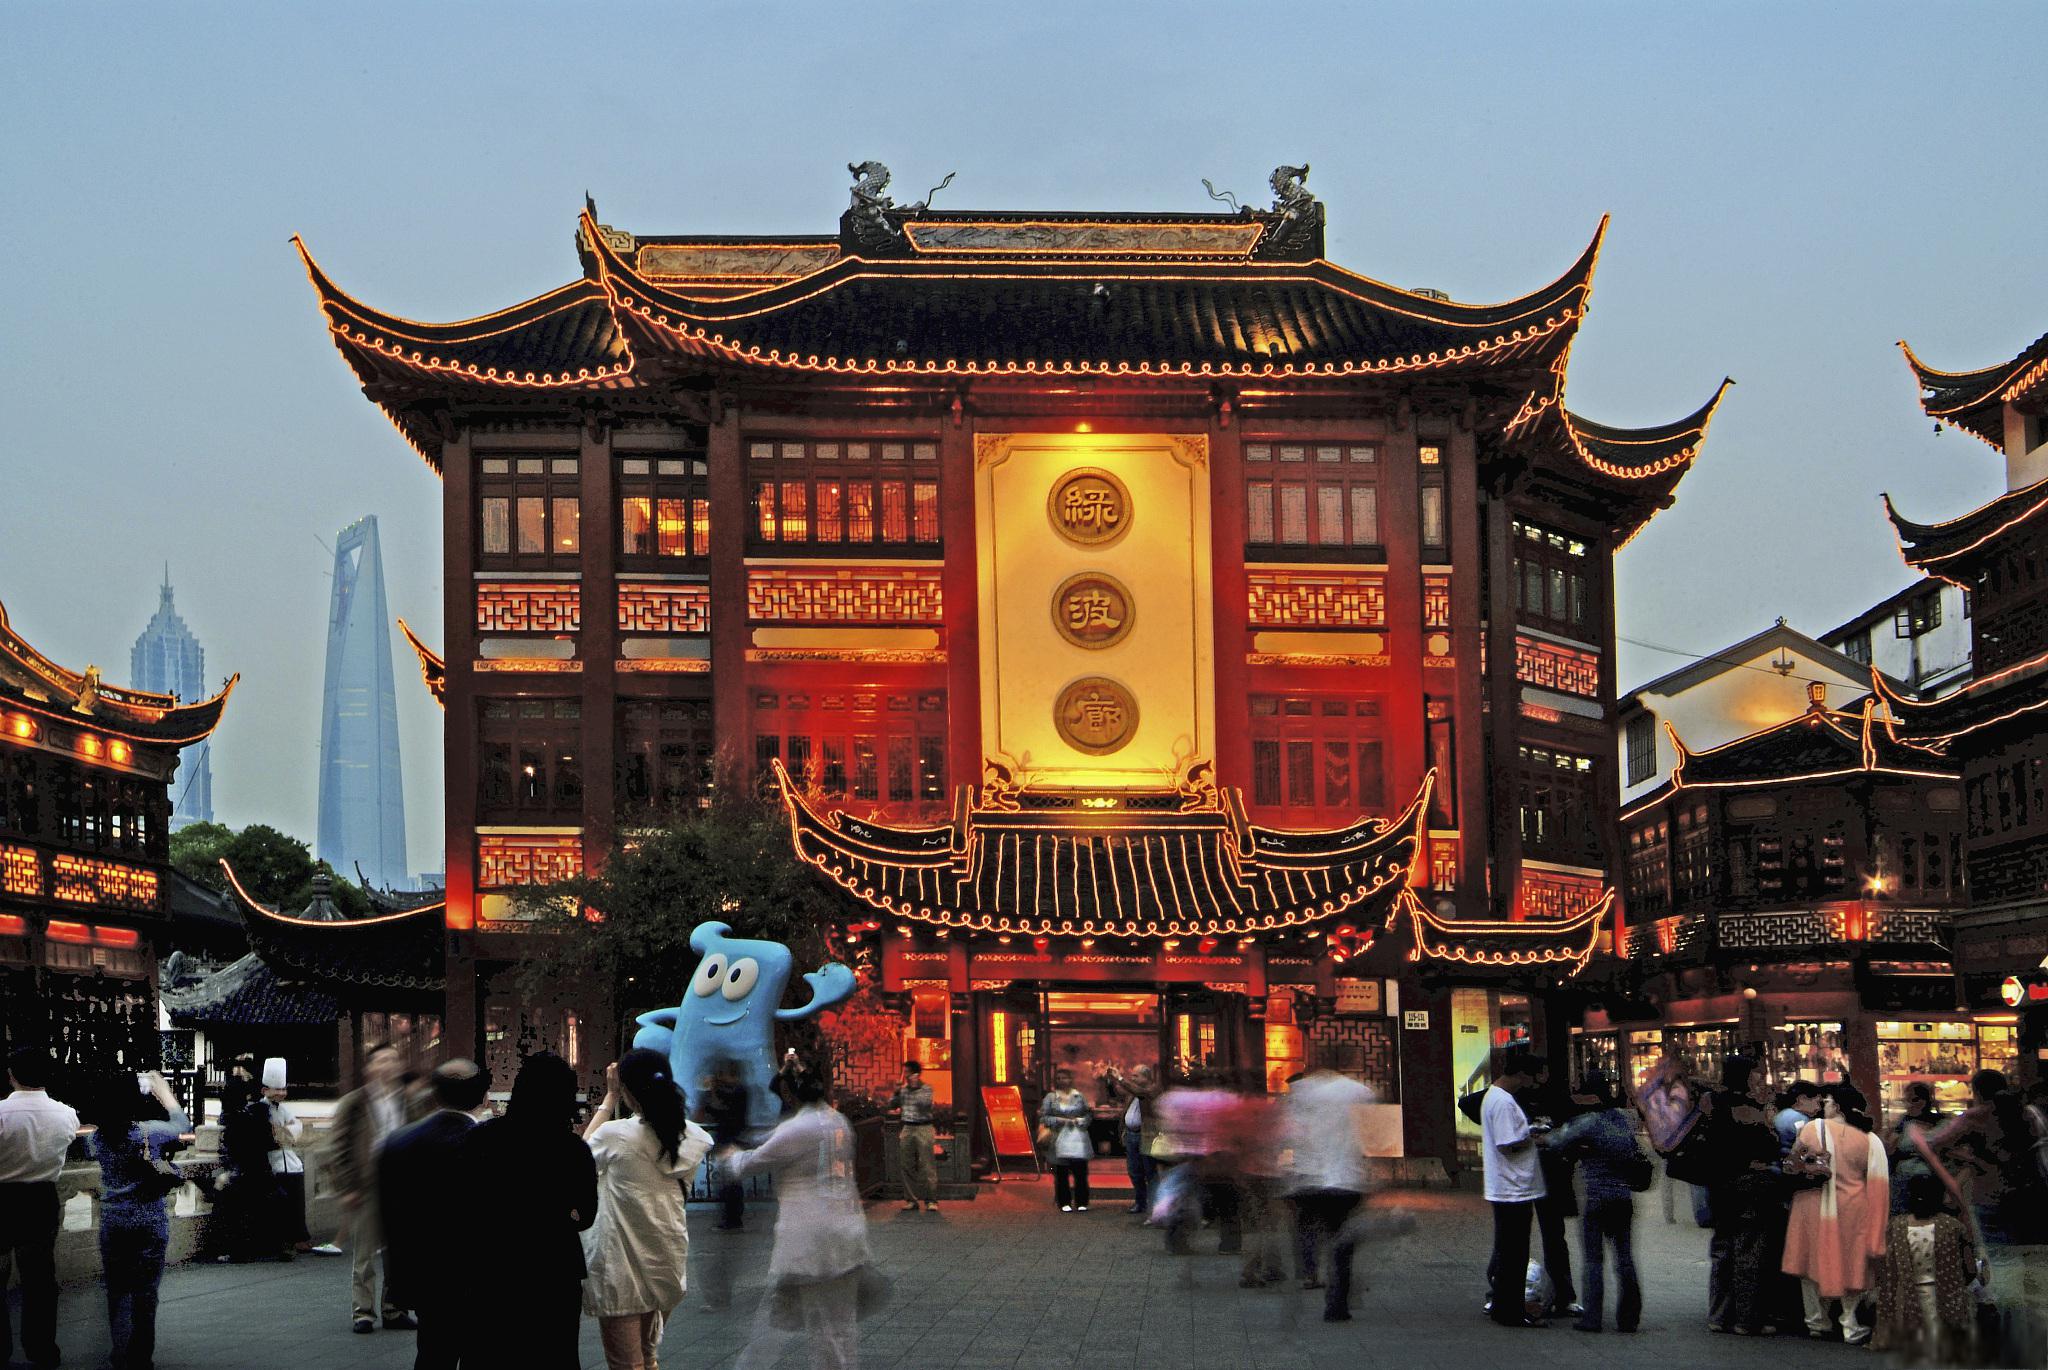 上海必去的五个景点 作为一个国际化的大都市,上海有很多值得一游的